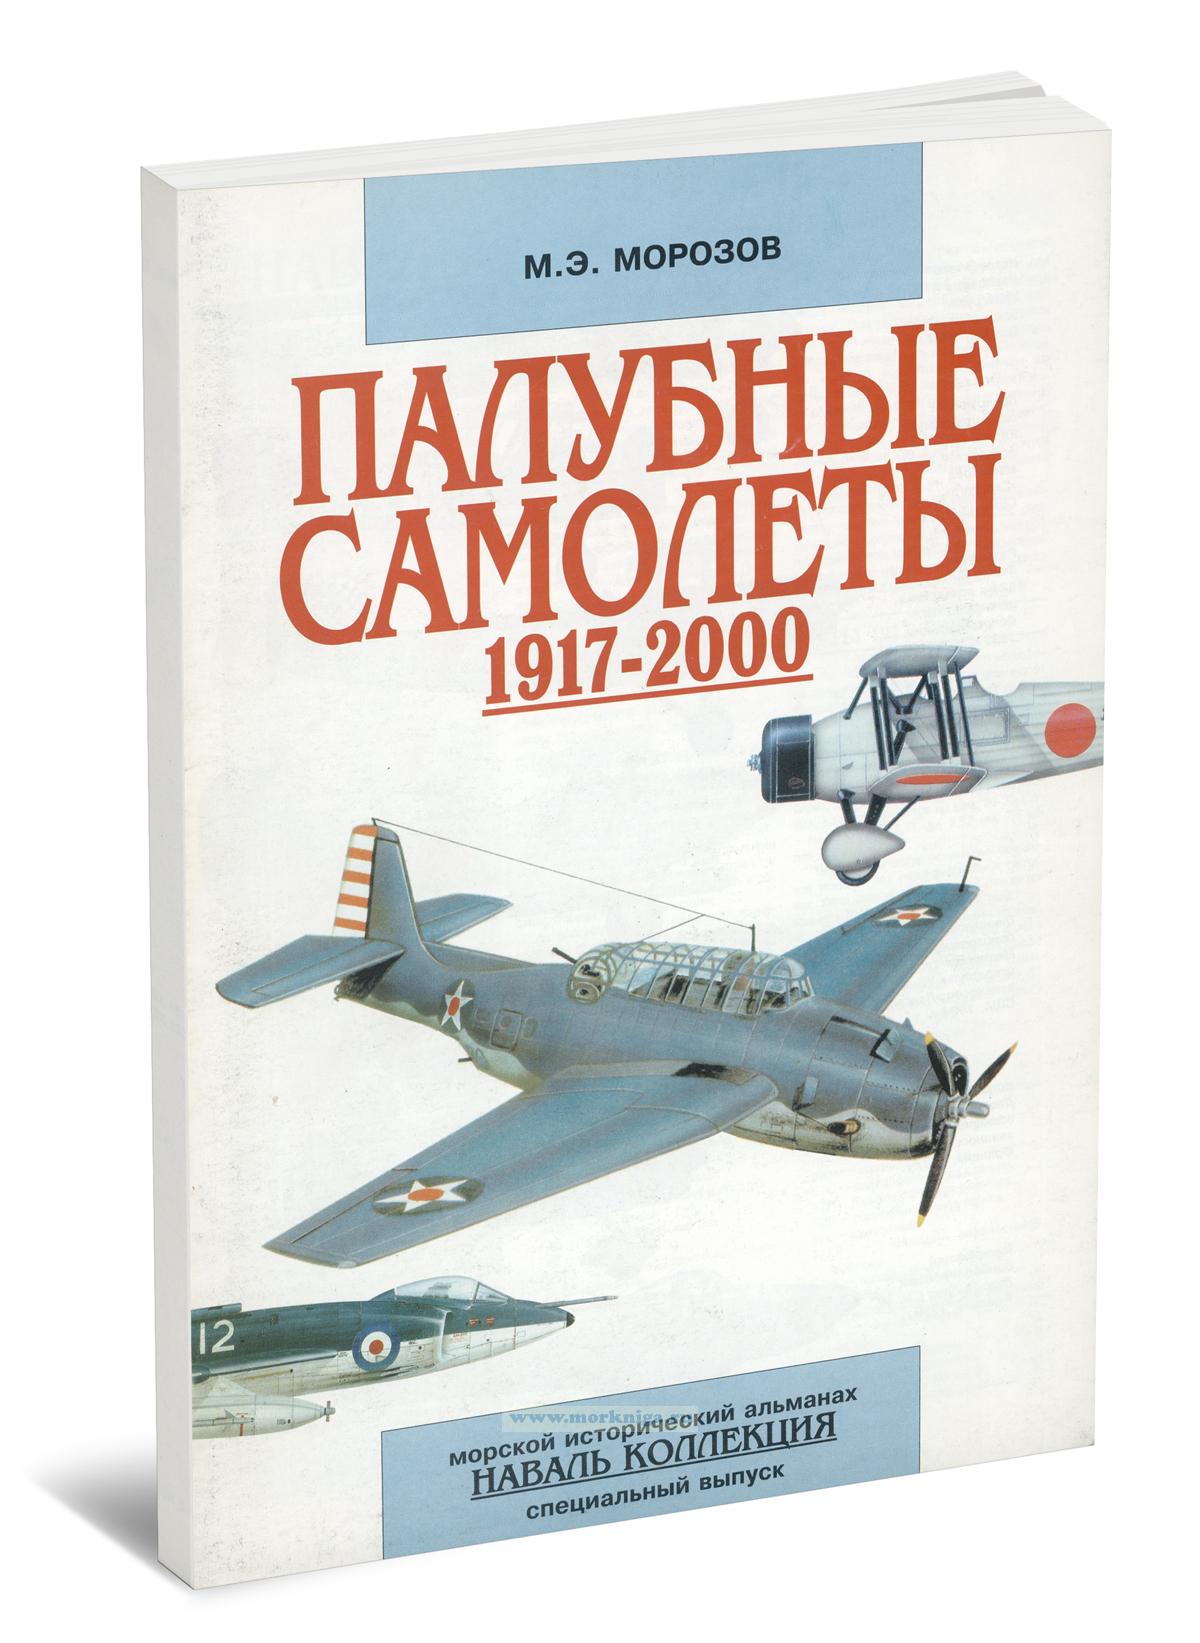 Морской исторический альманах №4, 2000 г. Палубные самолеты 1917-2000